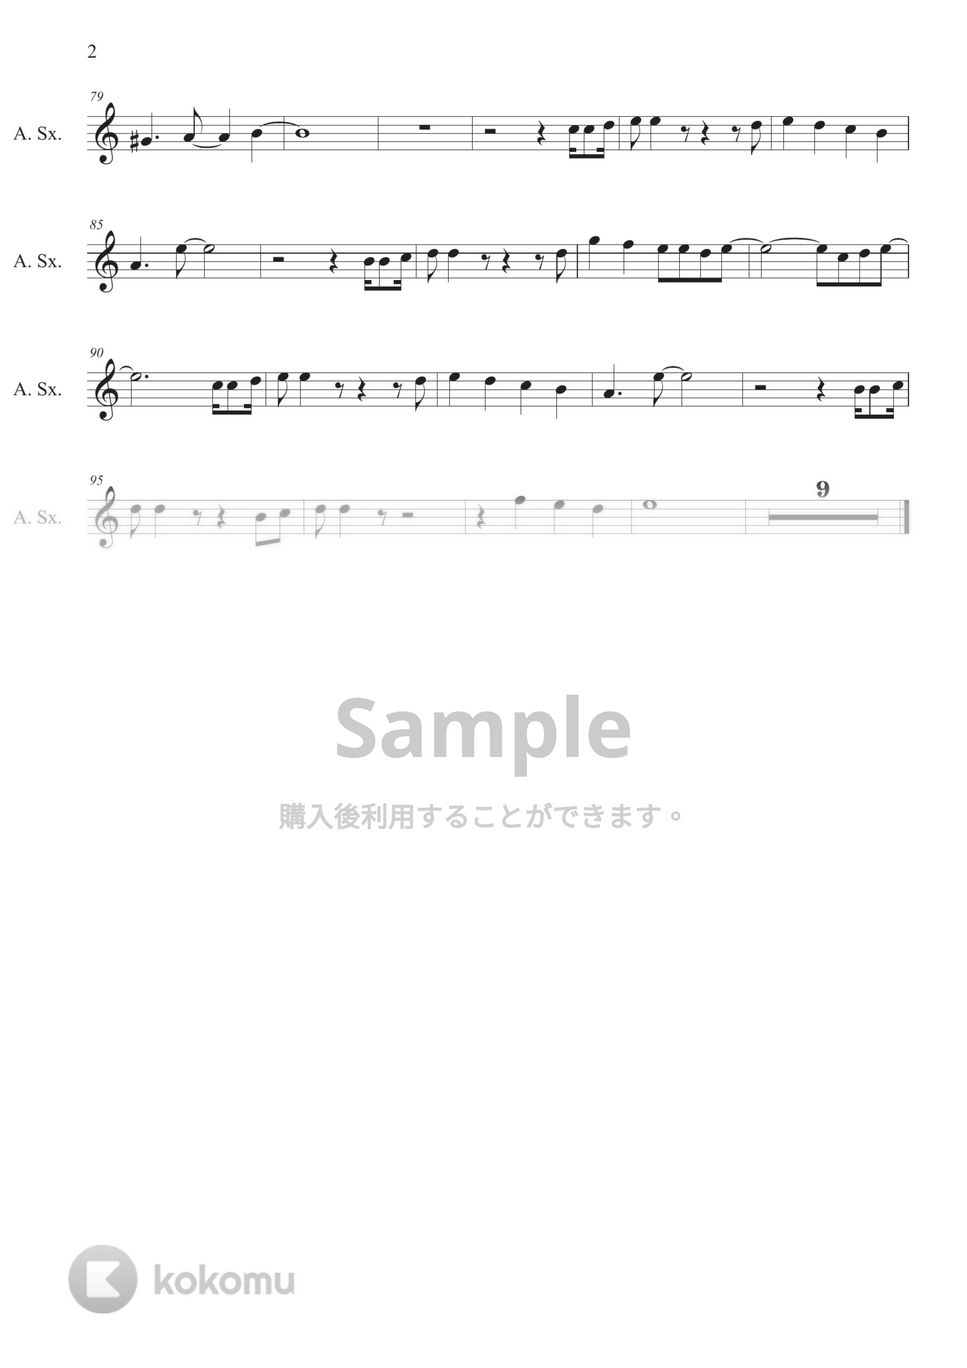 MAKE UP - ペガサス幻想 (inE♭) by HiRO Sax